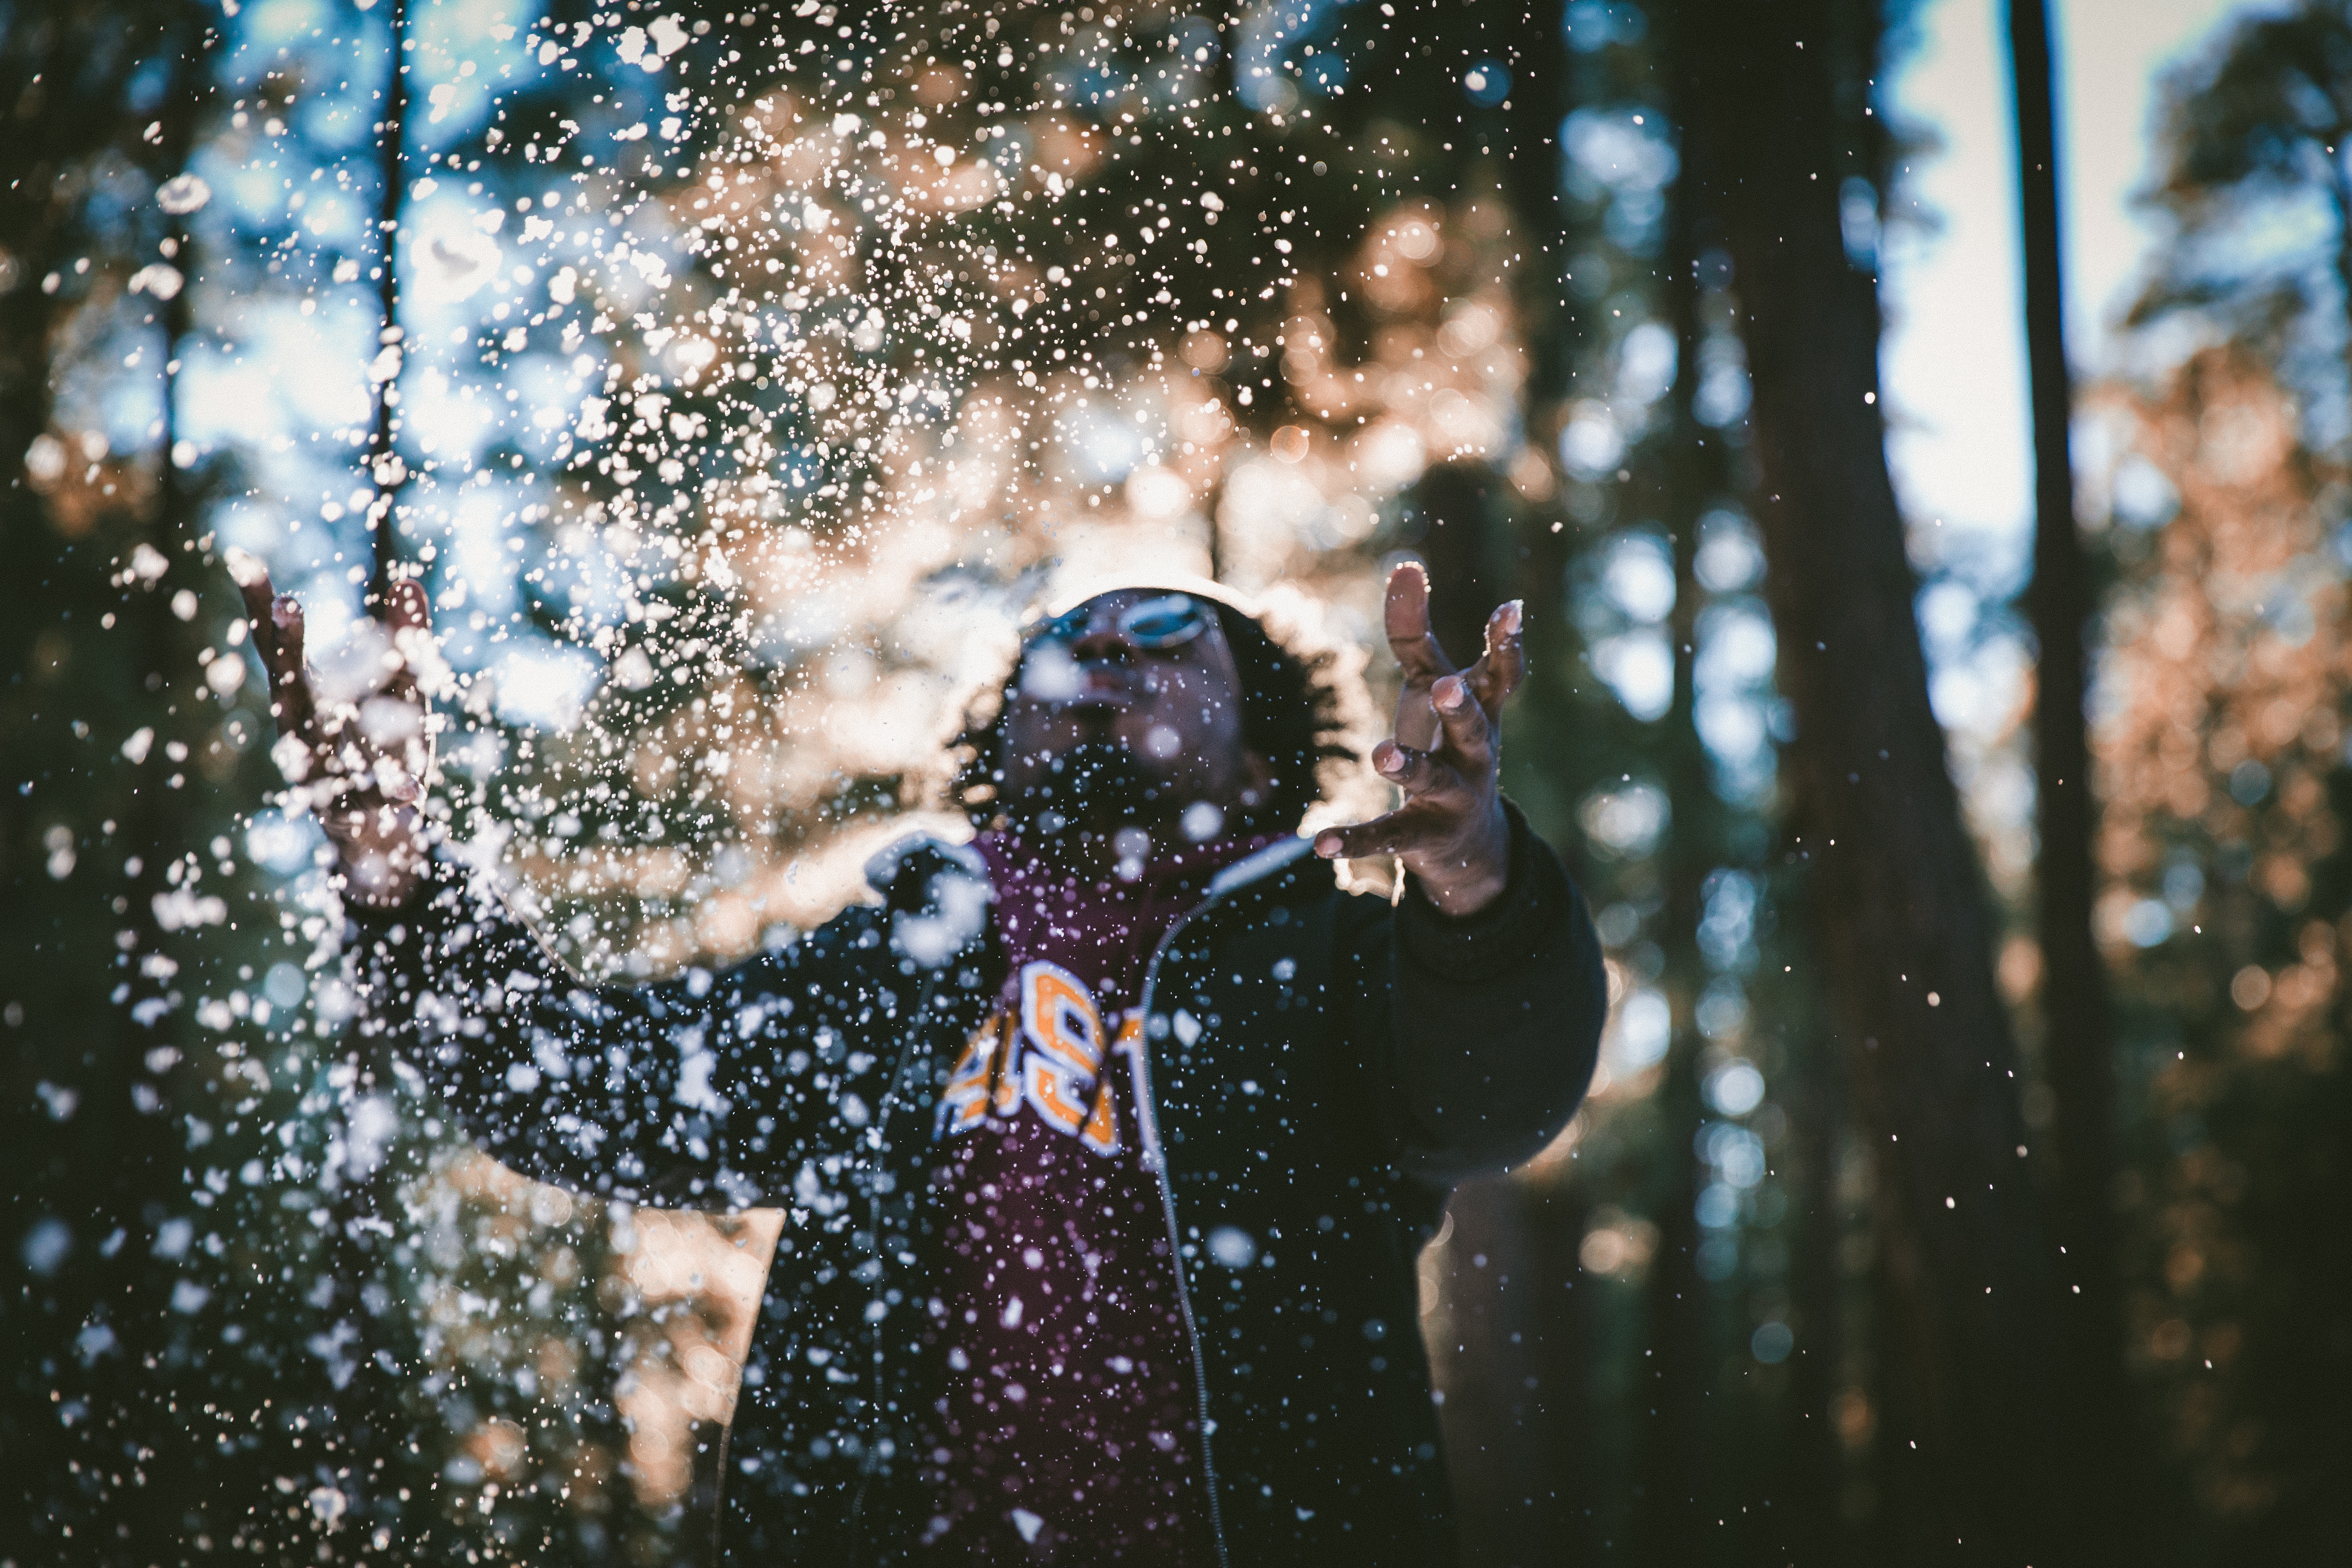 Man throwing snow